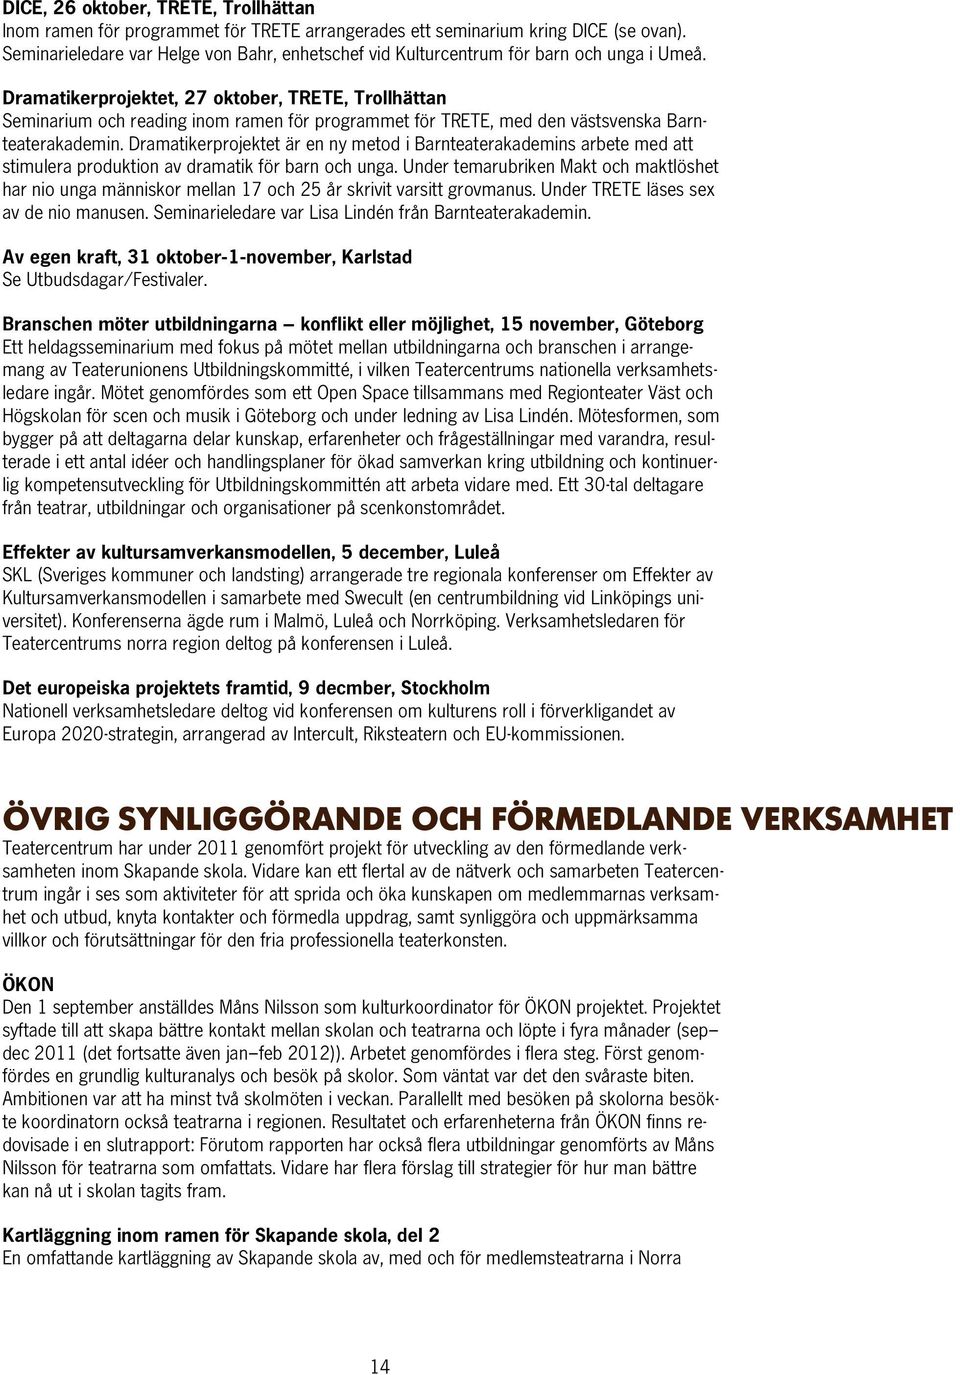 Dramatikerprojektet, 27 oktober, TRETE, Trollhättan Seminarium och reading inom ramen för programmet för TRETE, med den västsvenska Barnteaterakademin.